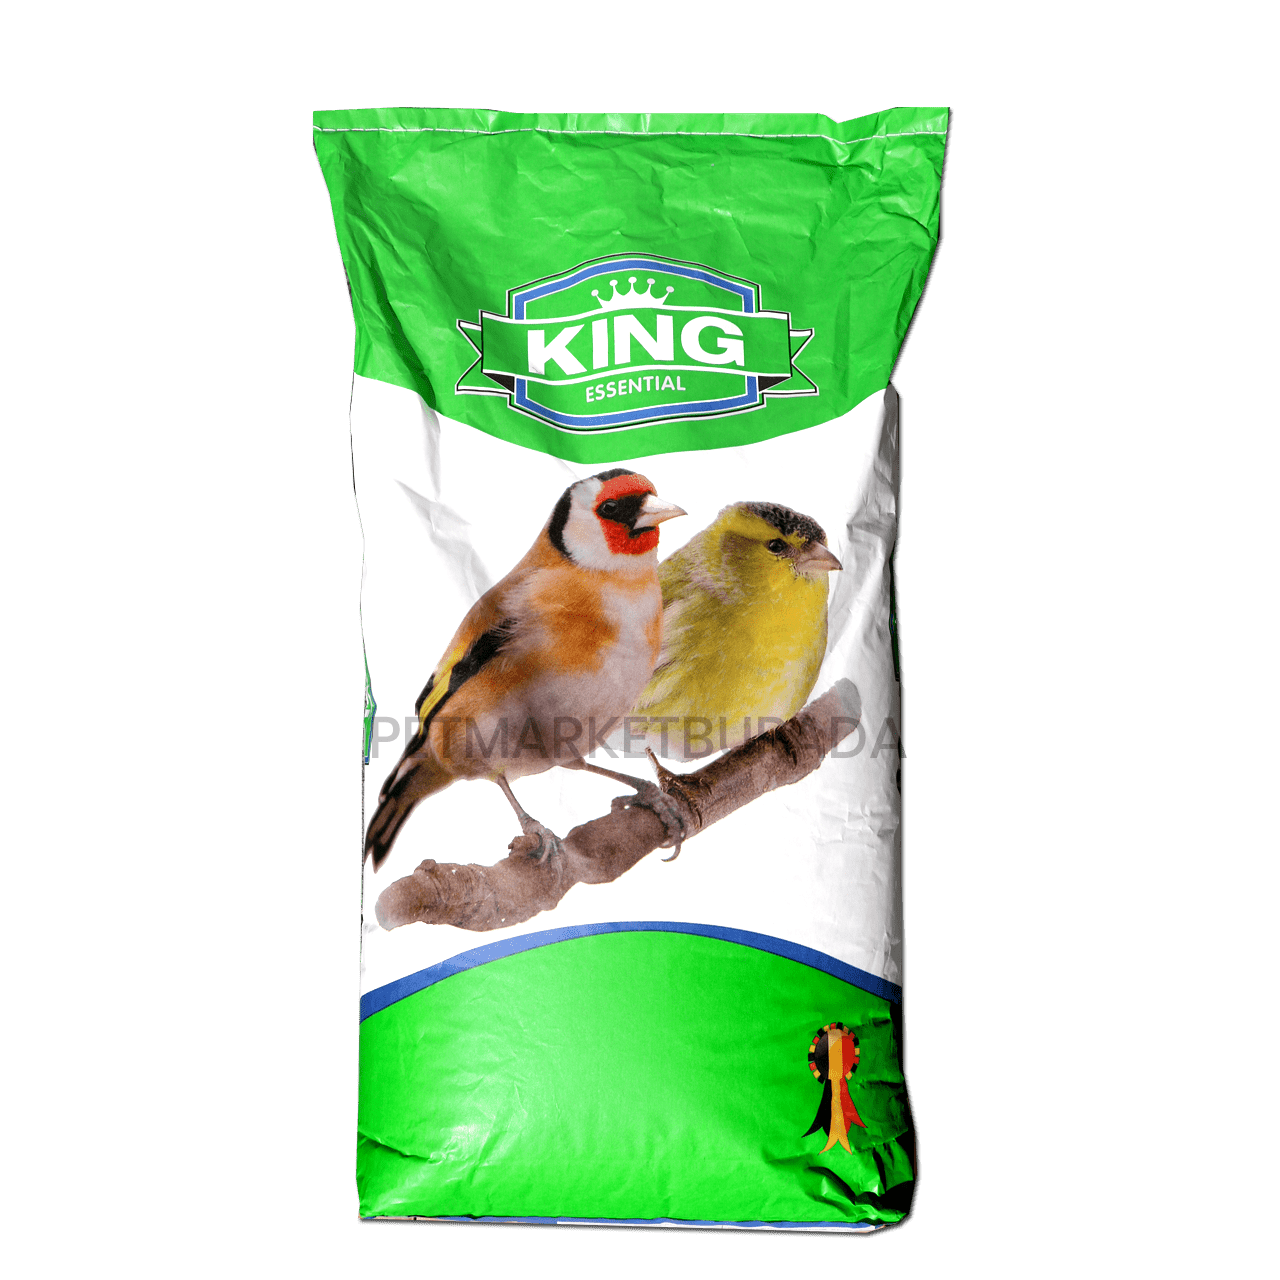 Natural King European Finch Karışık Saka Ve Doğa Kuşu Yemi 1 kg (Bölünmüş)